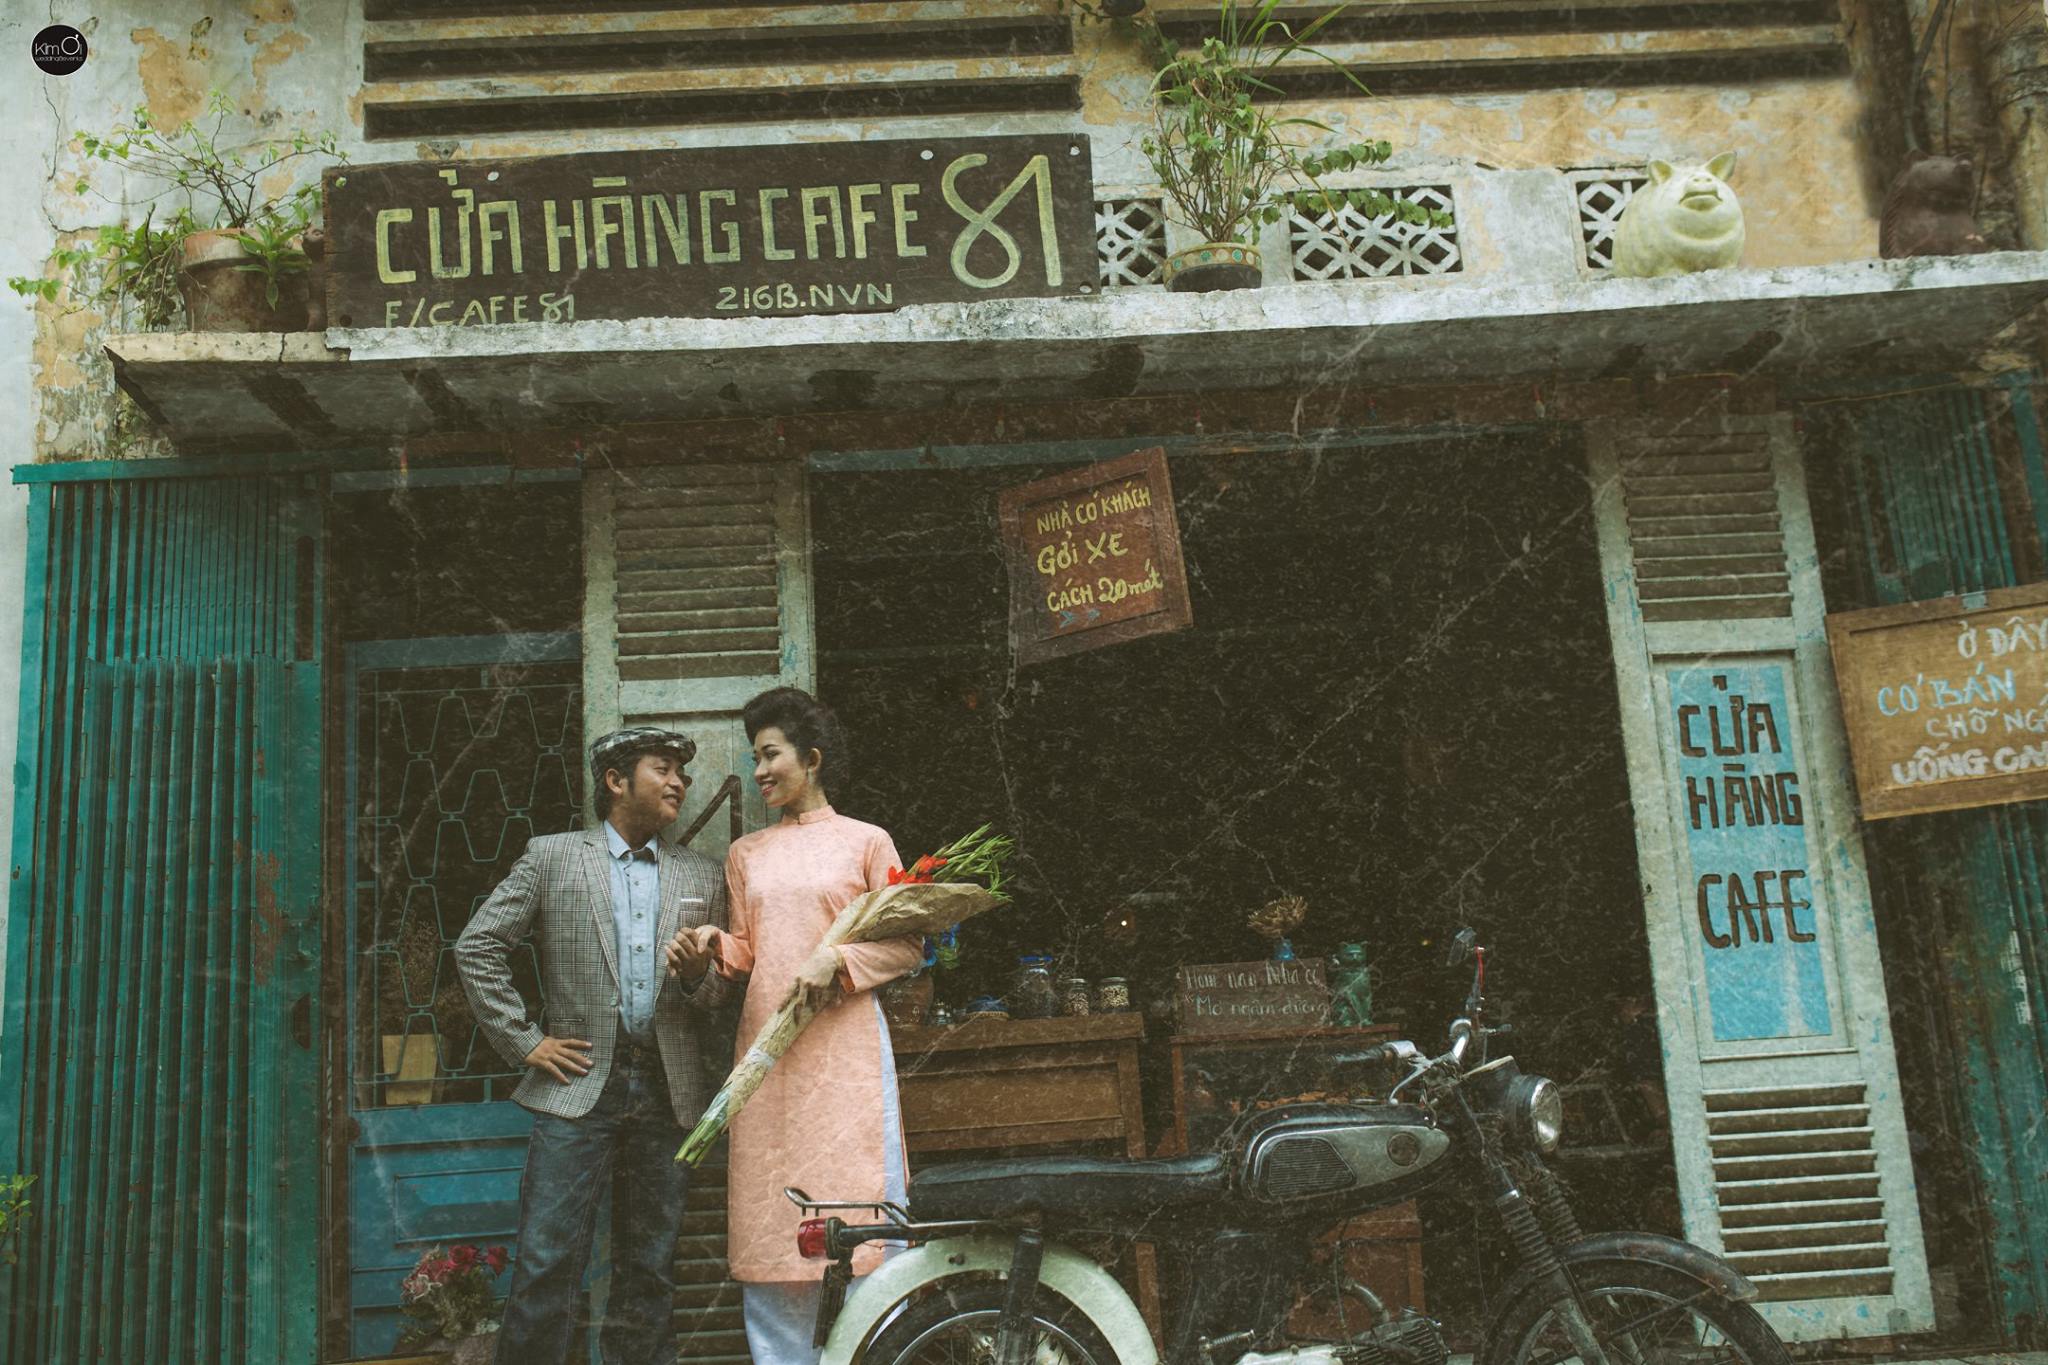 Sài Gòn những năm 80 mang lại cho chúng ta một cảm giác khác lạ, đầy thú vị. Bức ảnh sẽ khiến bạn ngỡ như đang đứng trên những con phố đông đúc, nhìn những chiếc xe đầy sôi động và cảm nhận sự ấm áp của một Sài Gòn xưa. Nhanh tay đến và xem nhé!